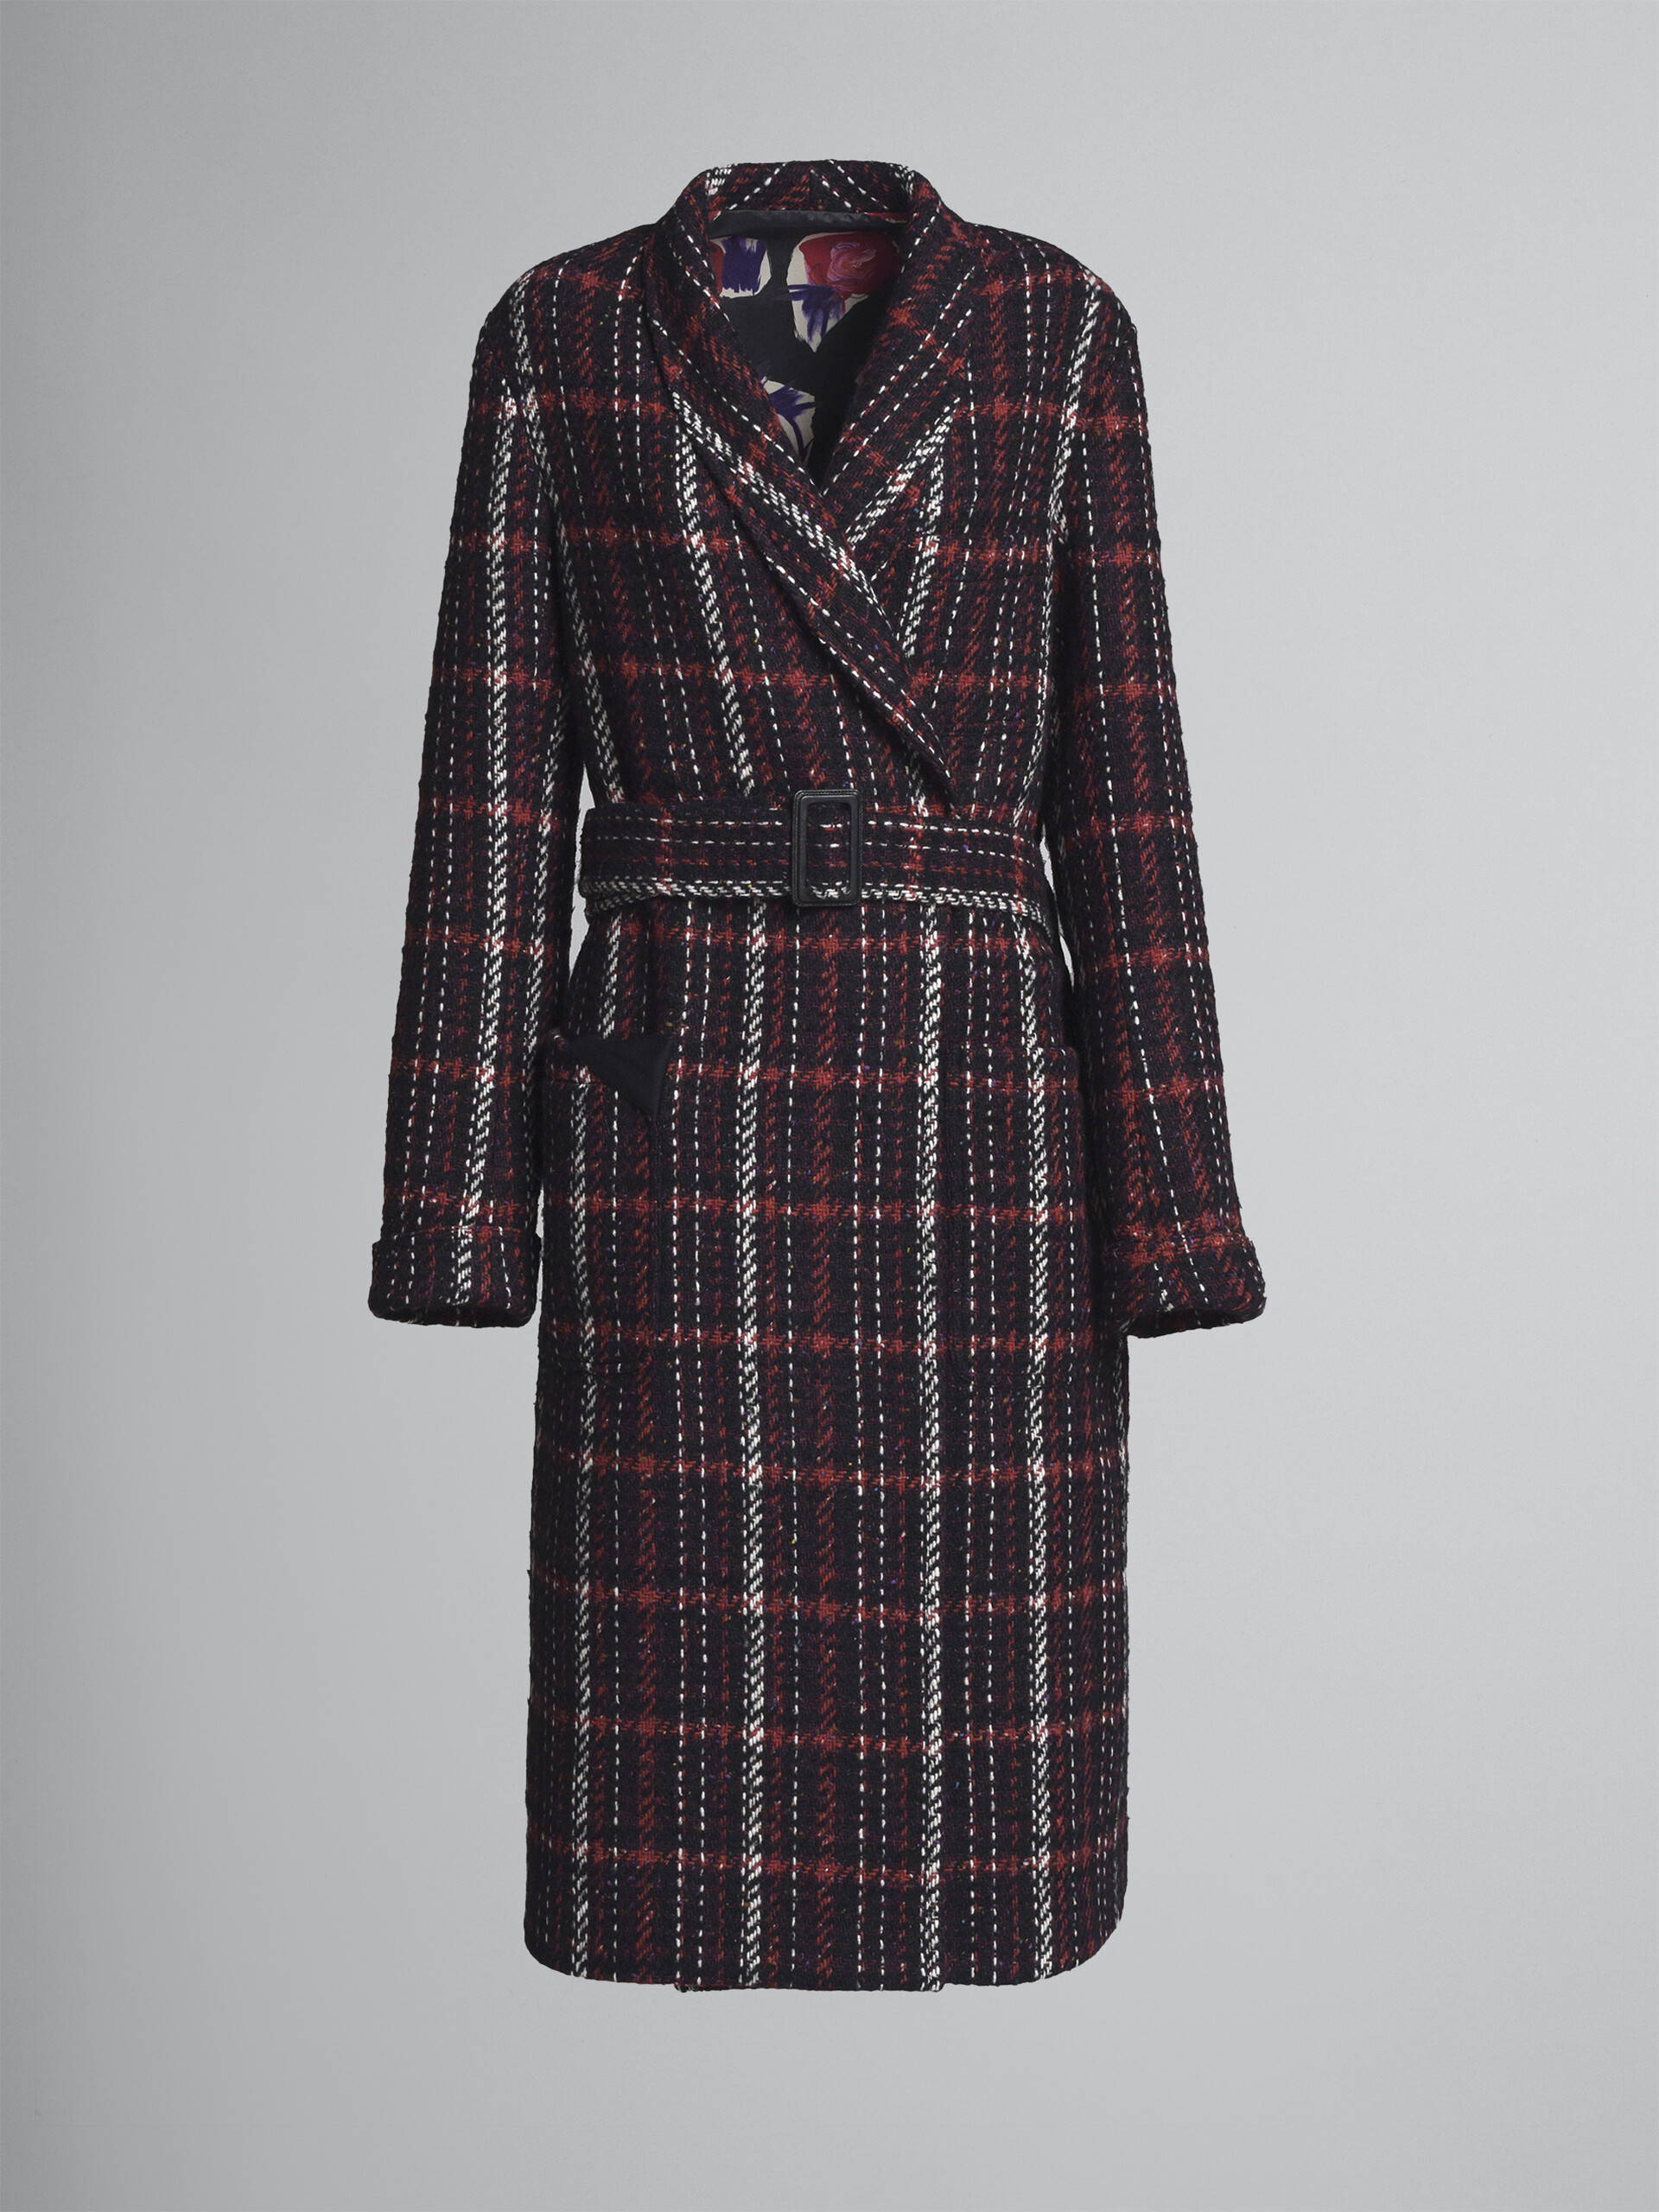 Reversible speckled tweed coat - Coat - Image 1